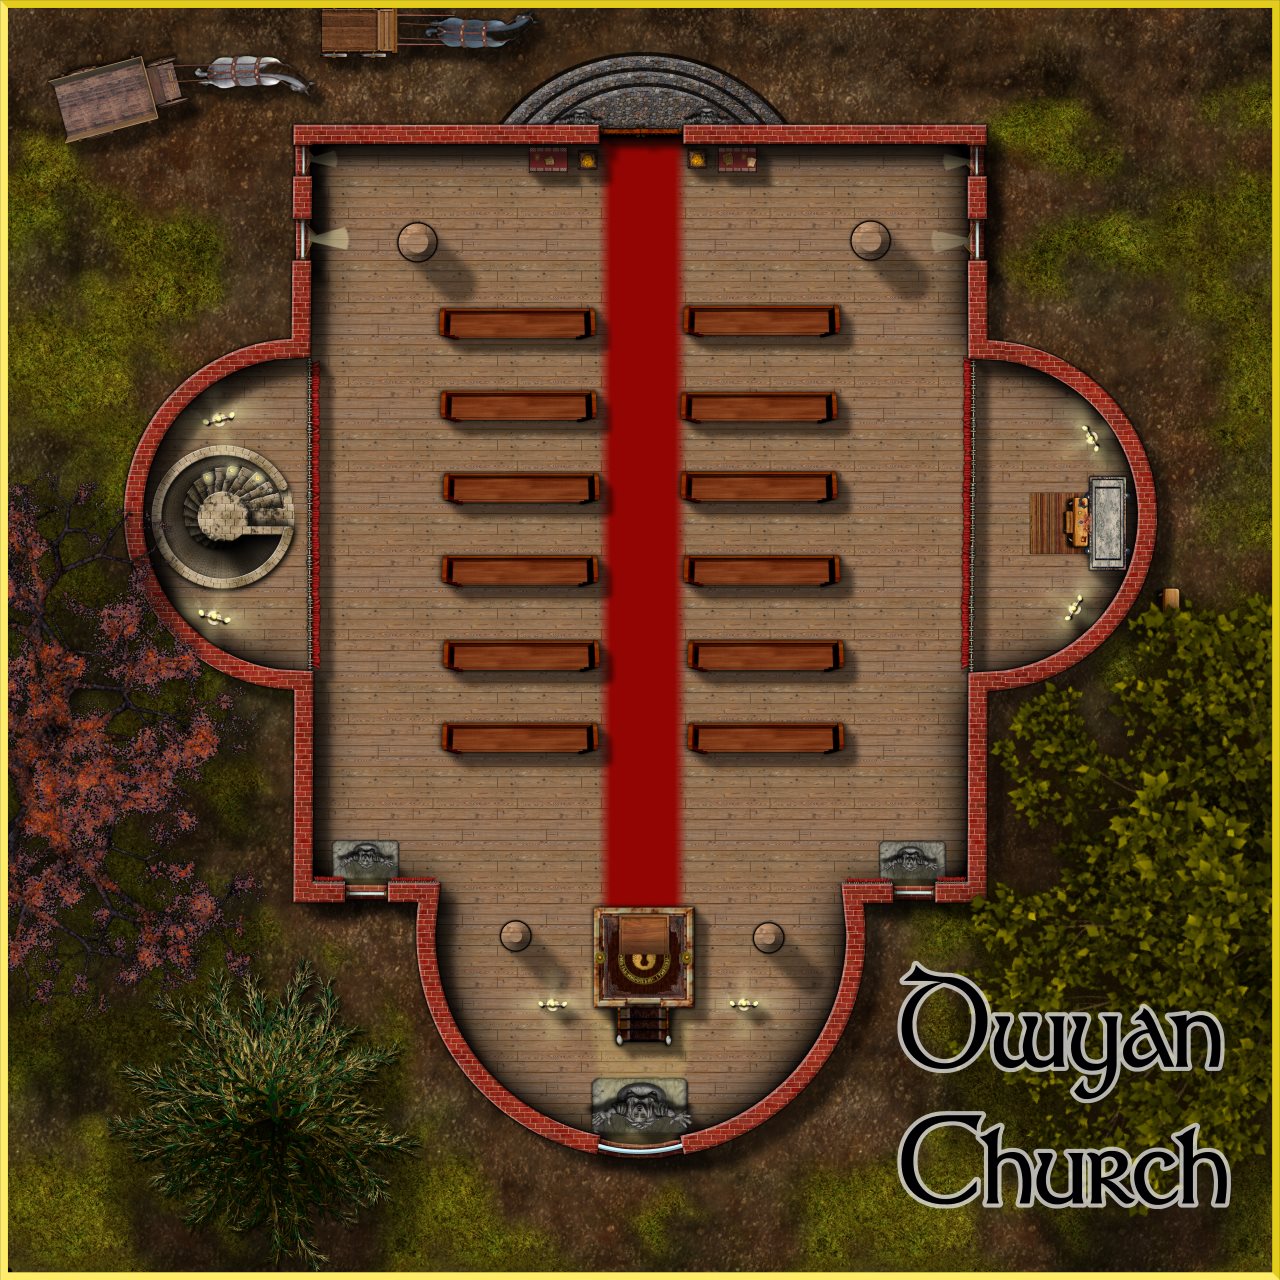 Nibirum Map: dwyan church by Lorelei